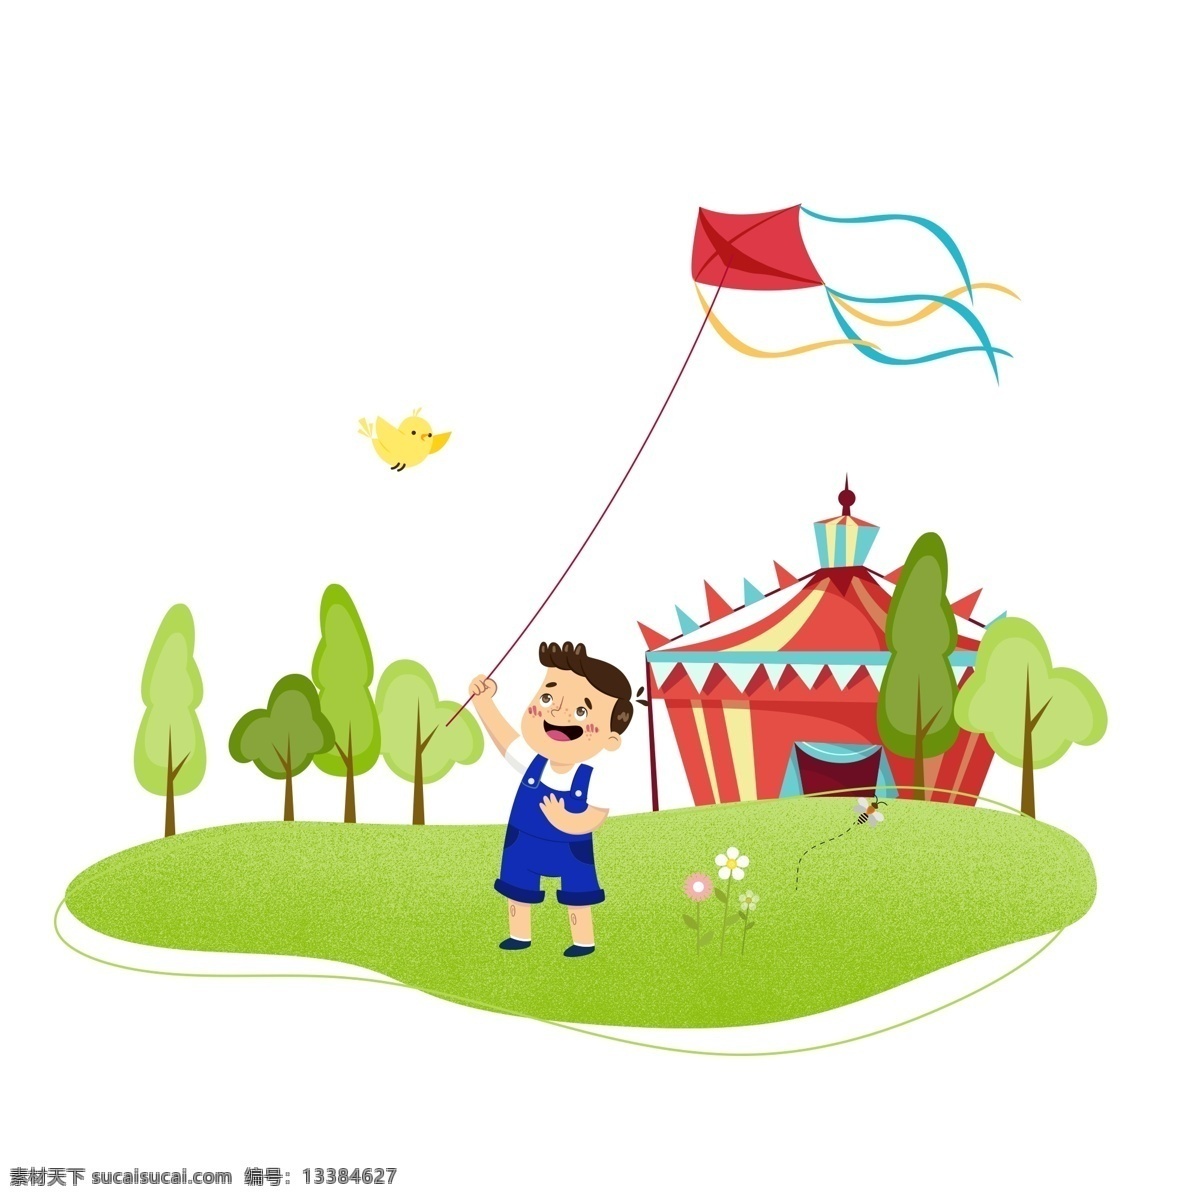 手绘 卡通 男孩 春季 放风筝 元素 春天 花朵 树木 绿色 风筝 小鸟 草坪 房屋 游玩